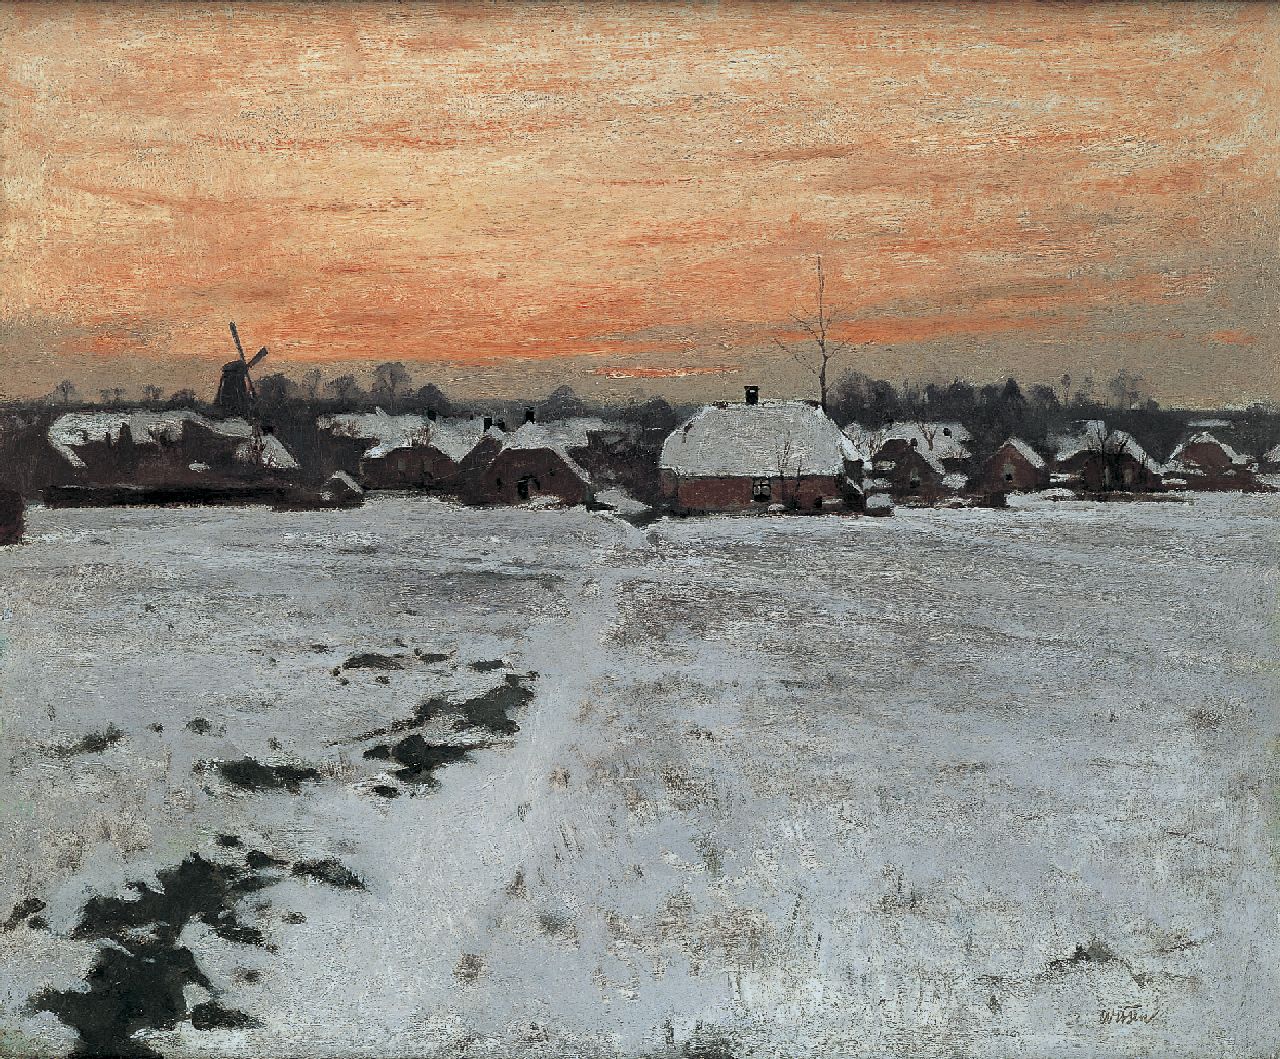 Witsen W.A.  | 'Willem' Arnold Witsen, Evening twilight, Ede, Öl auf Leinwand 45,0 x 54,0 cm, signed l.r. und painted circa 1895